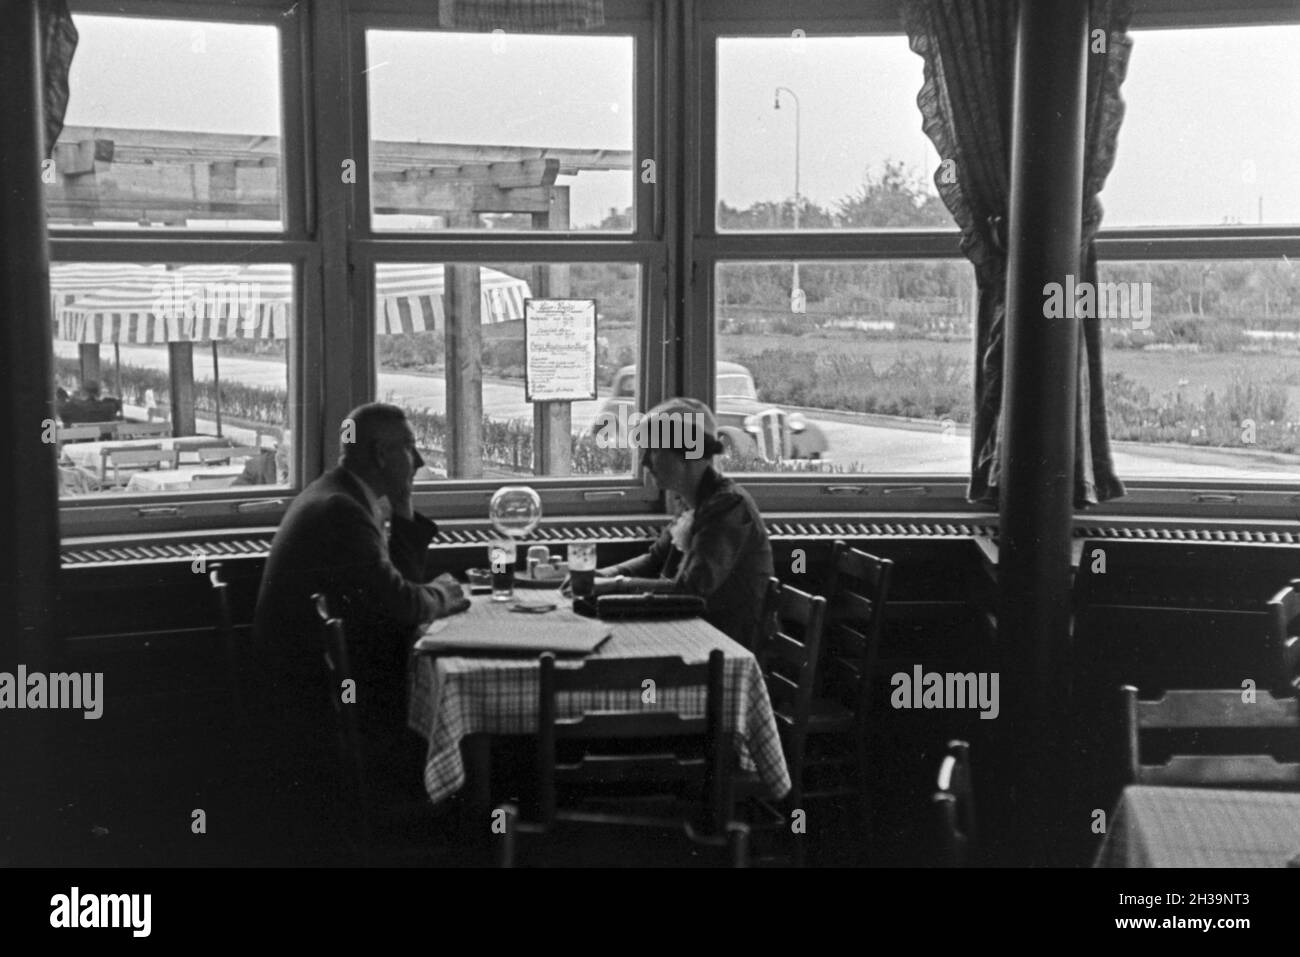 Ein Paar im Restaurant von Reichsautobahngaststätte, 1930er Jahre Deutschland. Un couple au restaurant d'un autoroute Reichsautobahn roadhouse, Allemagne 1930. Banque D'Images